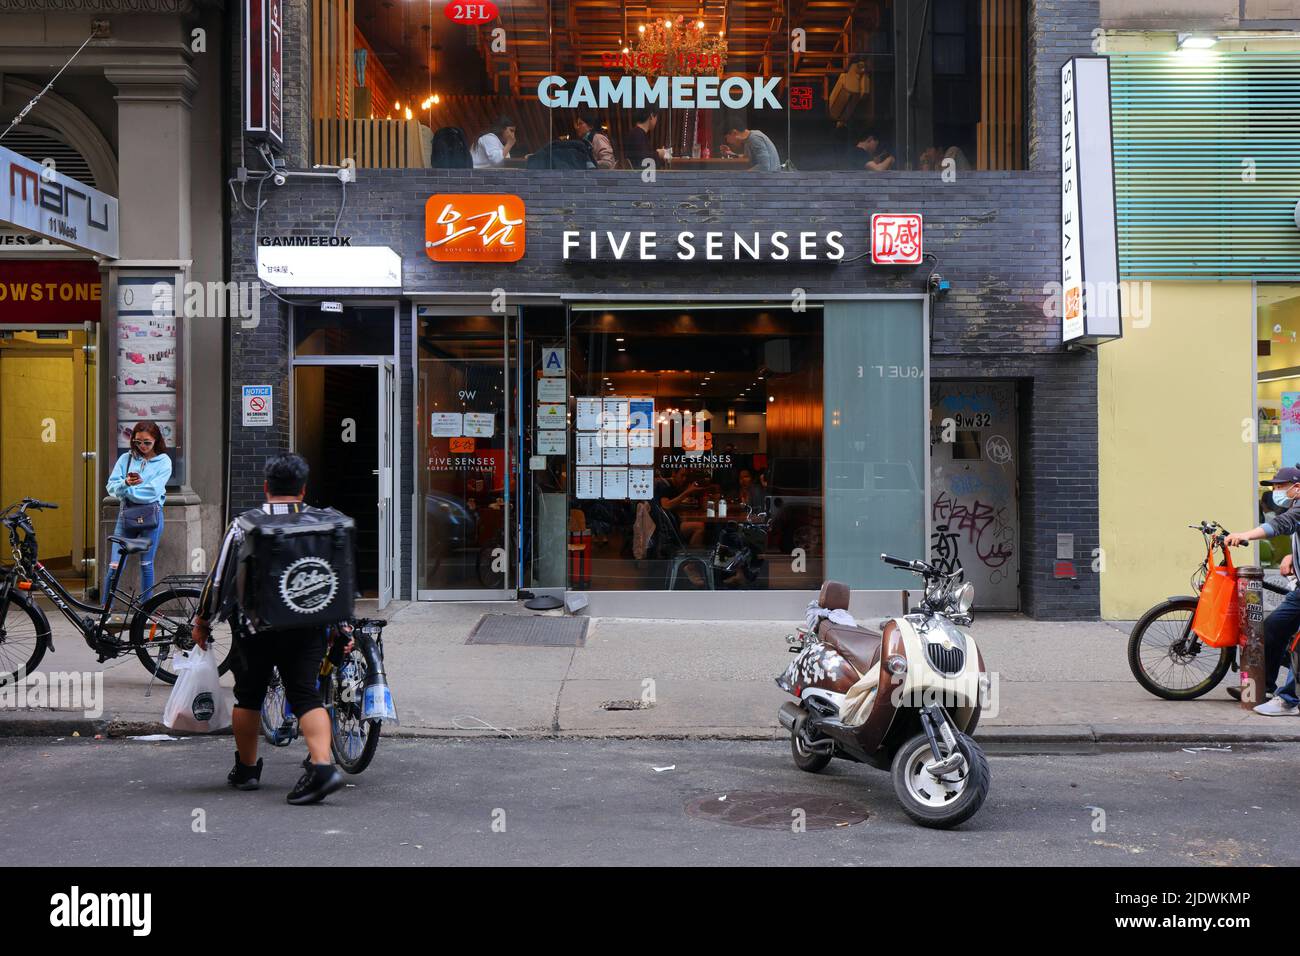 Five Senses 오감, Gammeeok 감미옥, 9 W 32nd St, New York, New York, New York photo de restaurants coréens à Manhattan Koretown. Banque D'Images